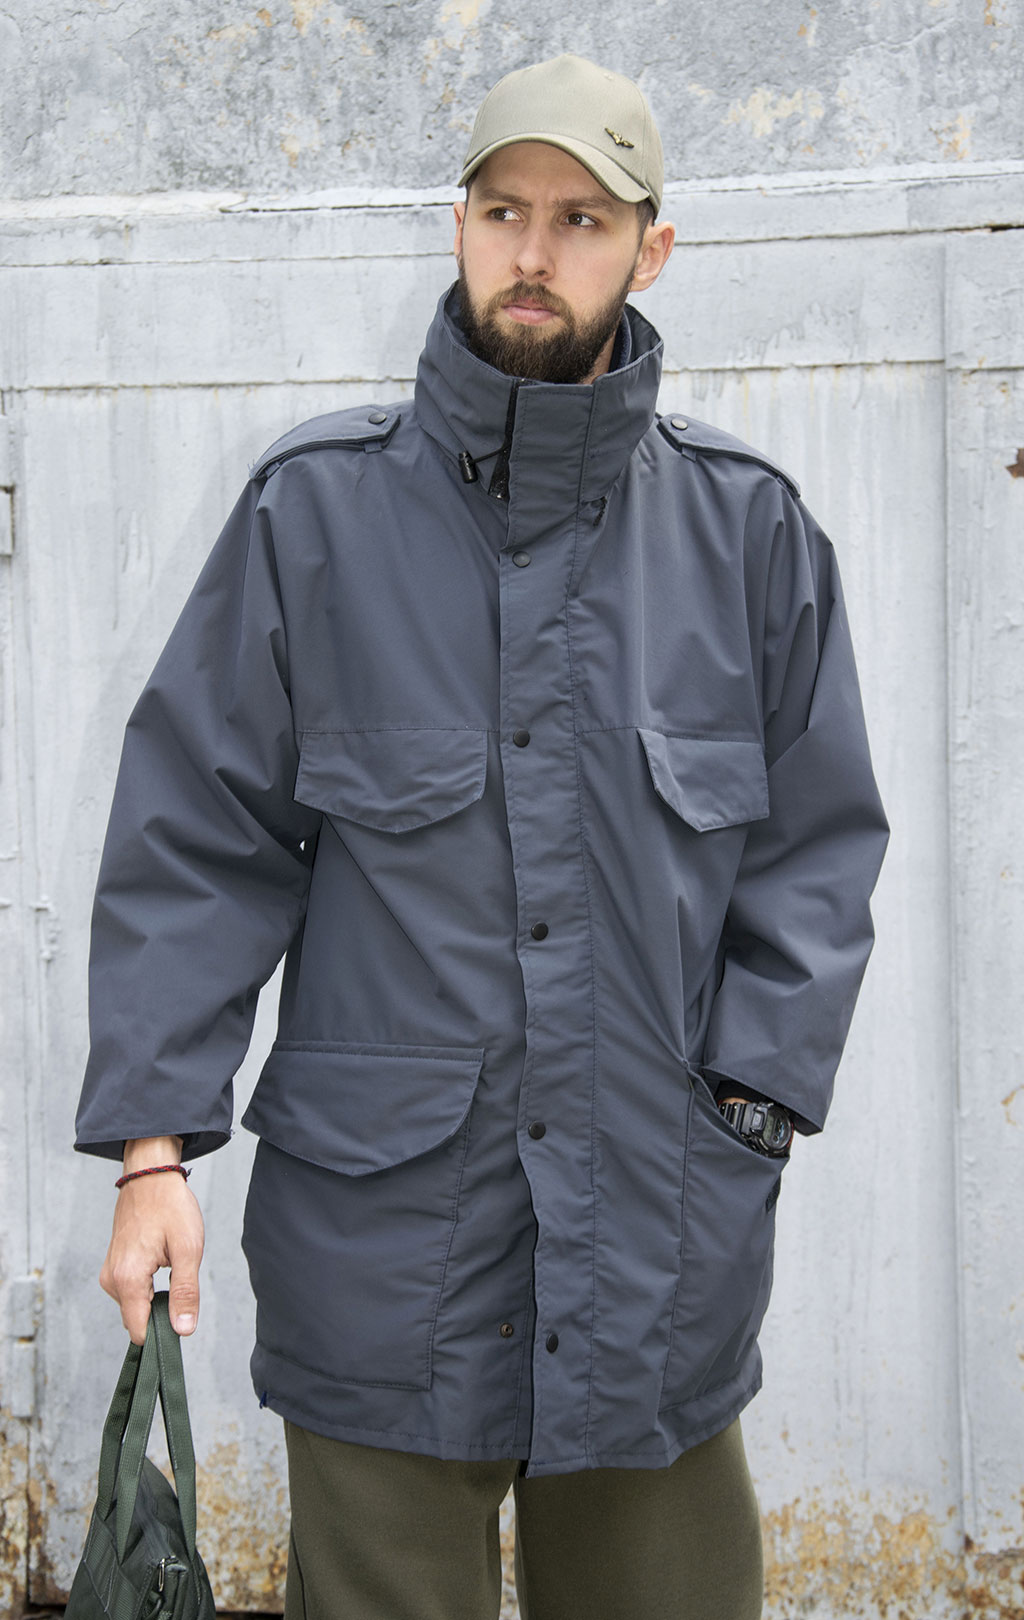 Куртка непромокаемая мембрана с капюшоном navy б/у Англия